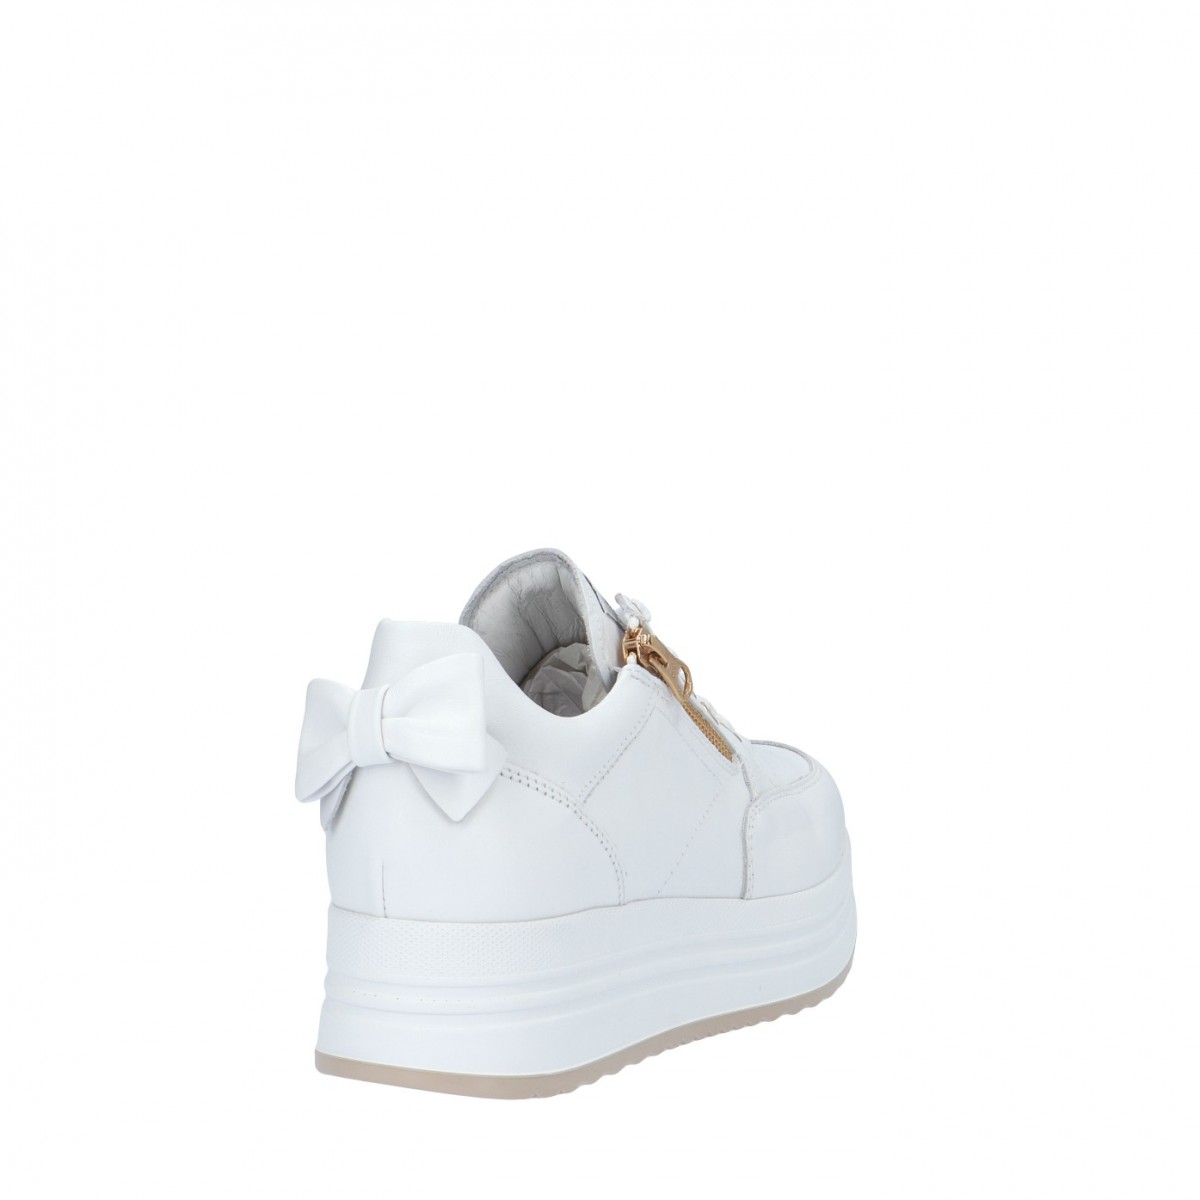 Nerogiardini Sneaker Bianco Gomma E306371D